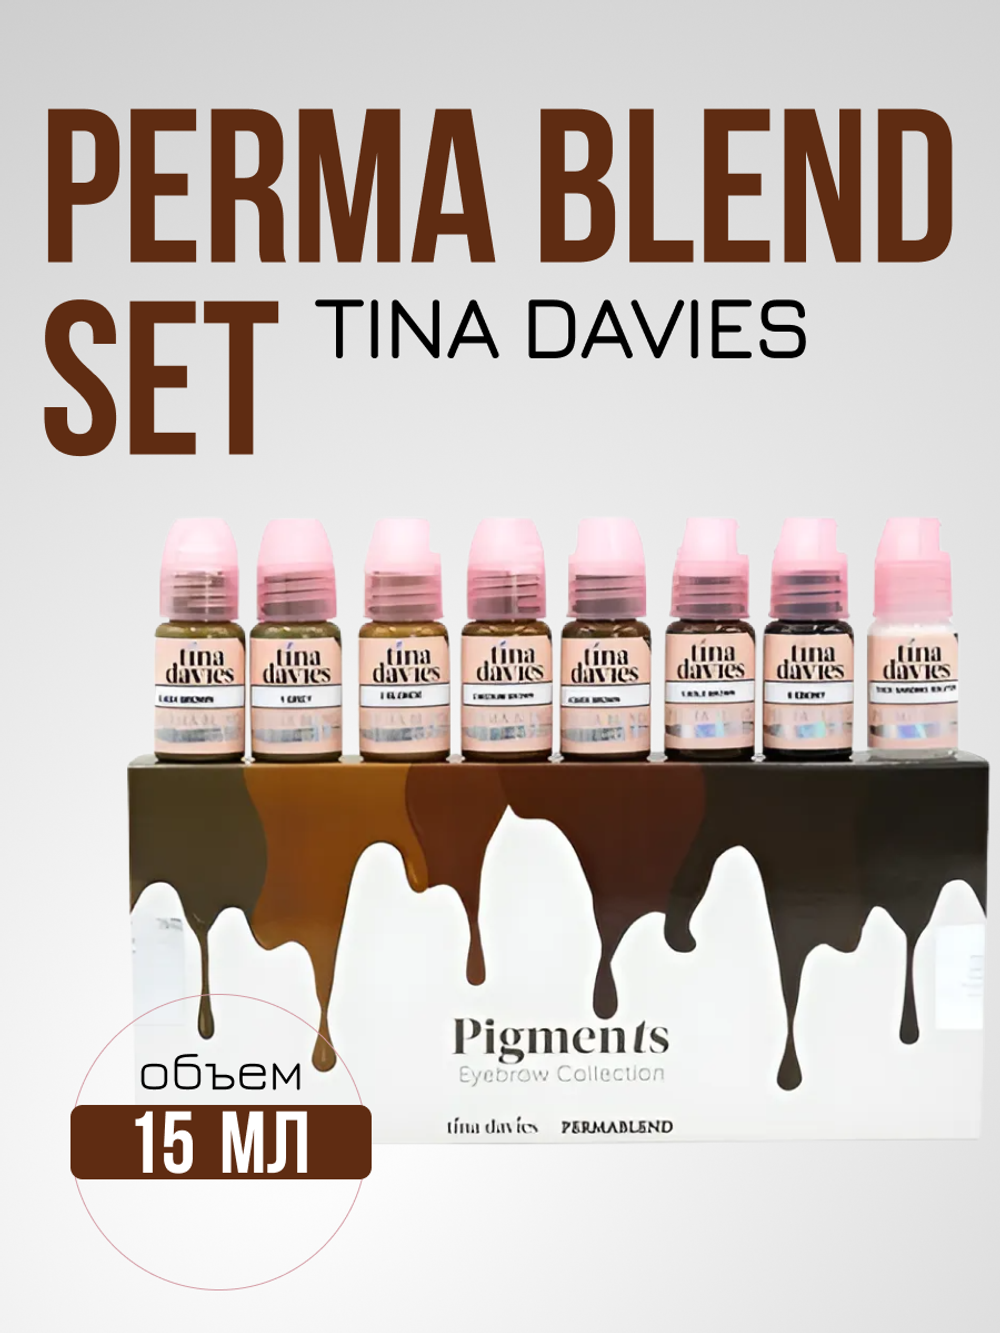 Сет Пигментов для татуажа бровей "Tina Davies 'I Love INK Set by Perma Blend"